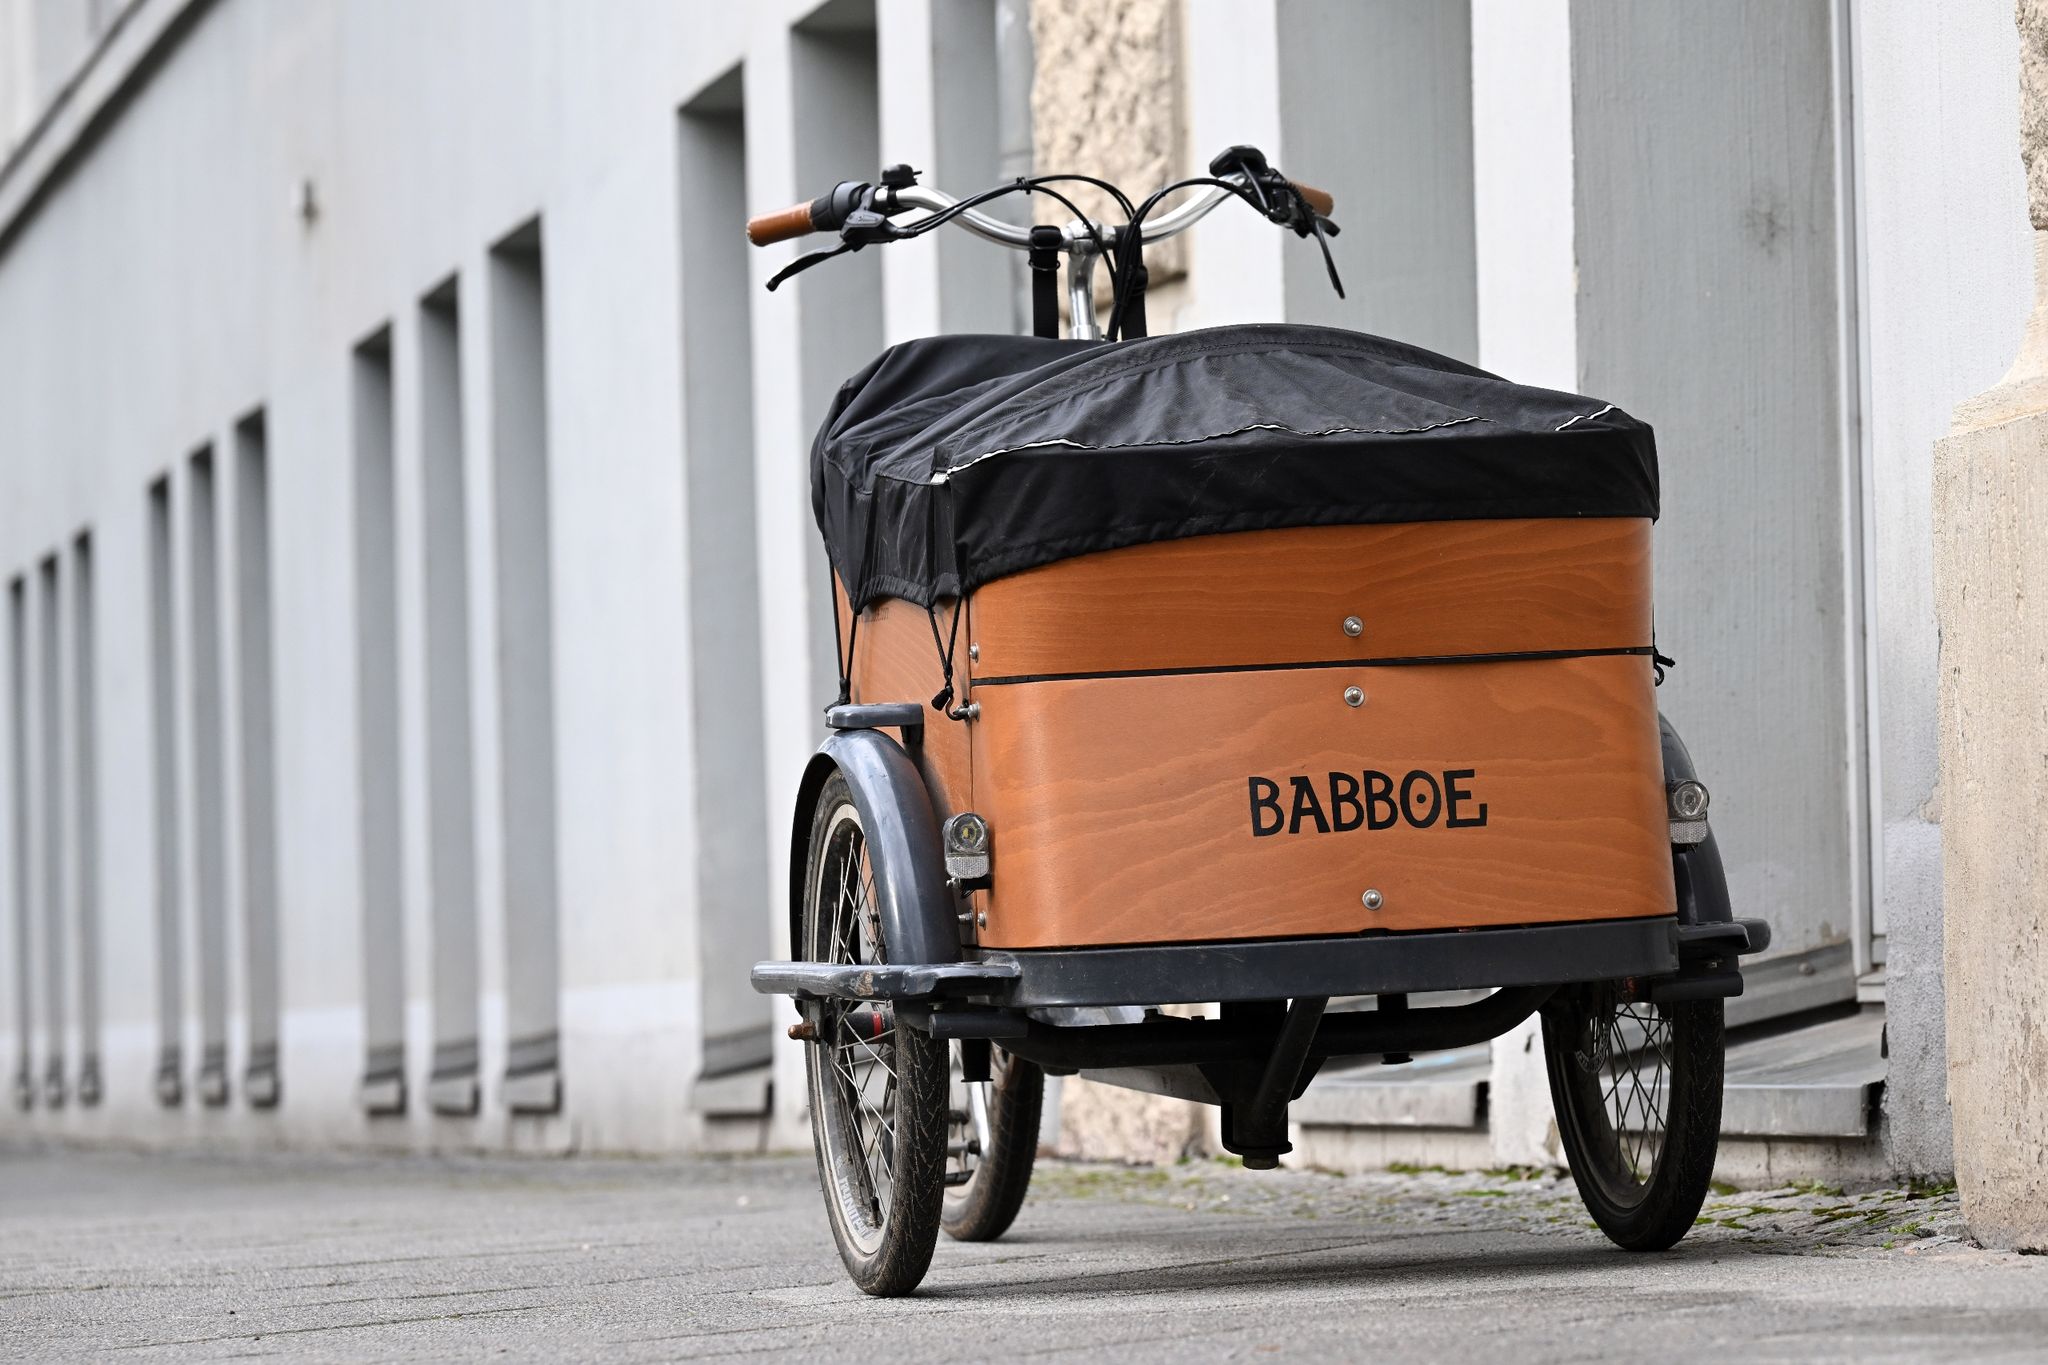 Babboe bereitet einen Rückruf verschiedener Lastenrad-Modelle vor – es gibt Sicherheitsprobleme mit Rahmenbrüchen.